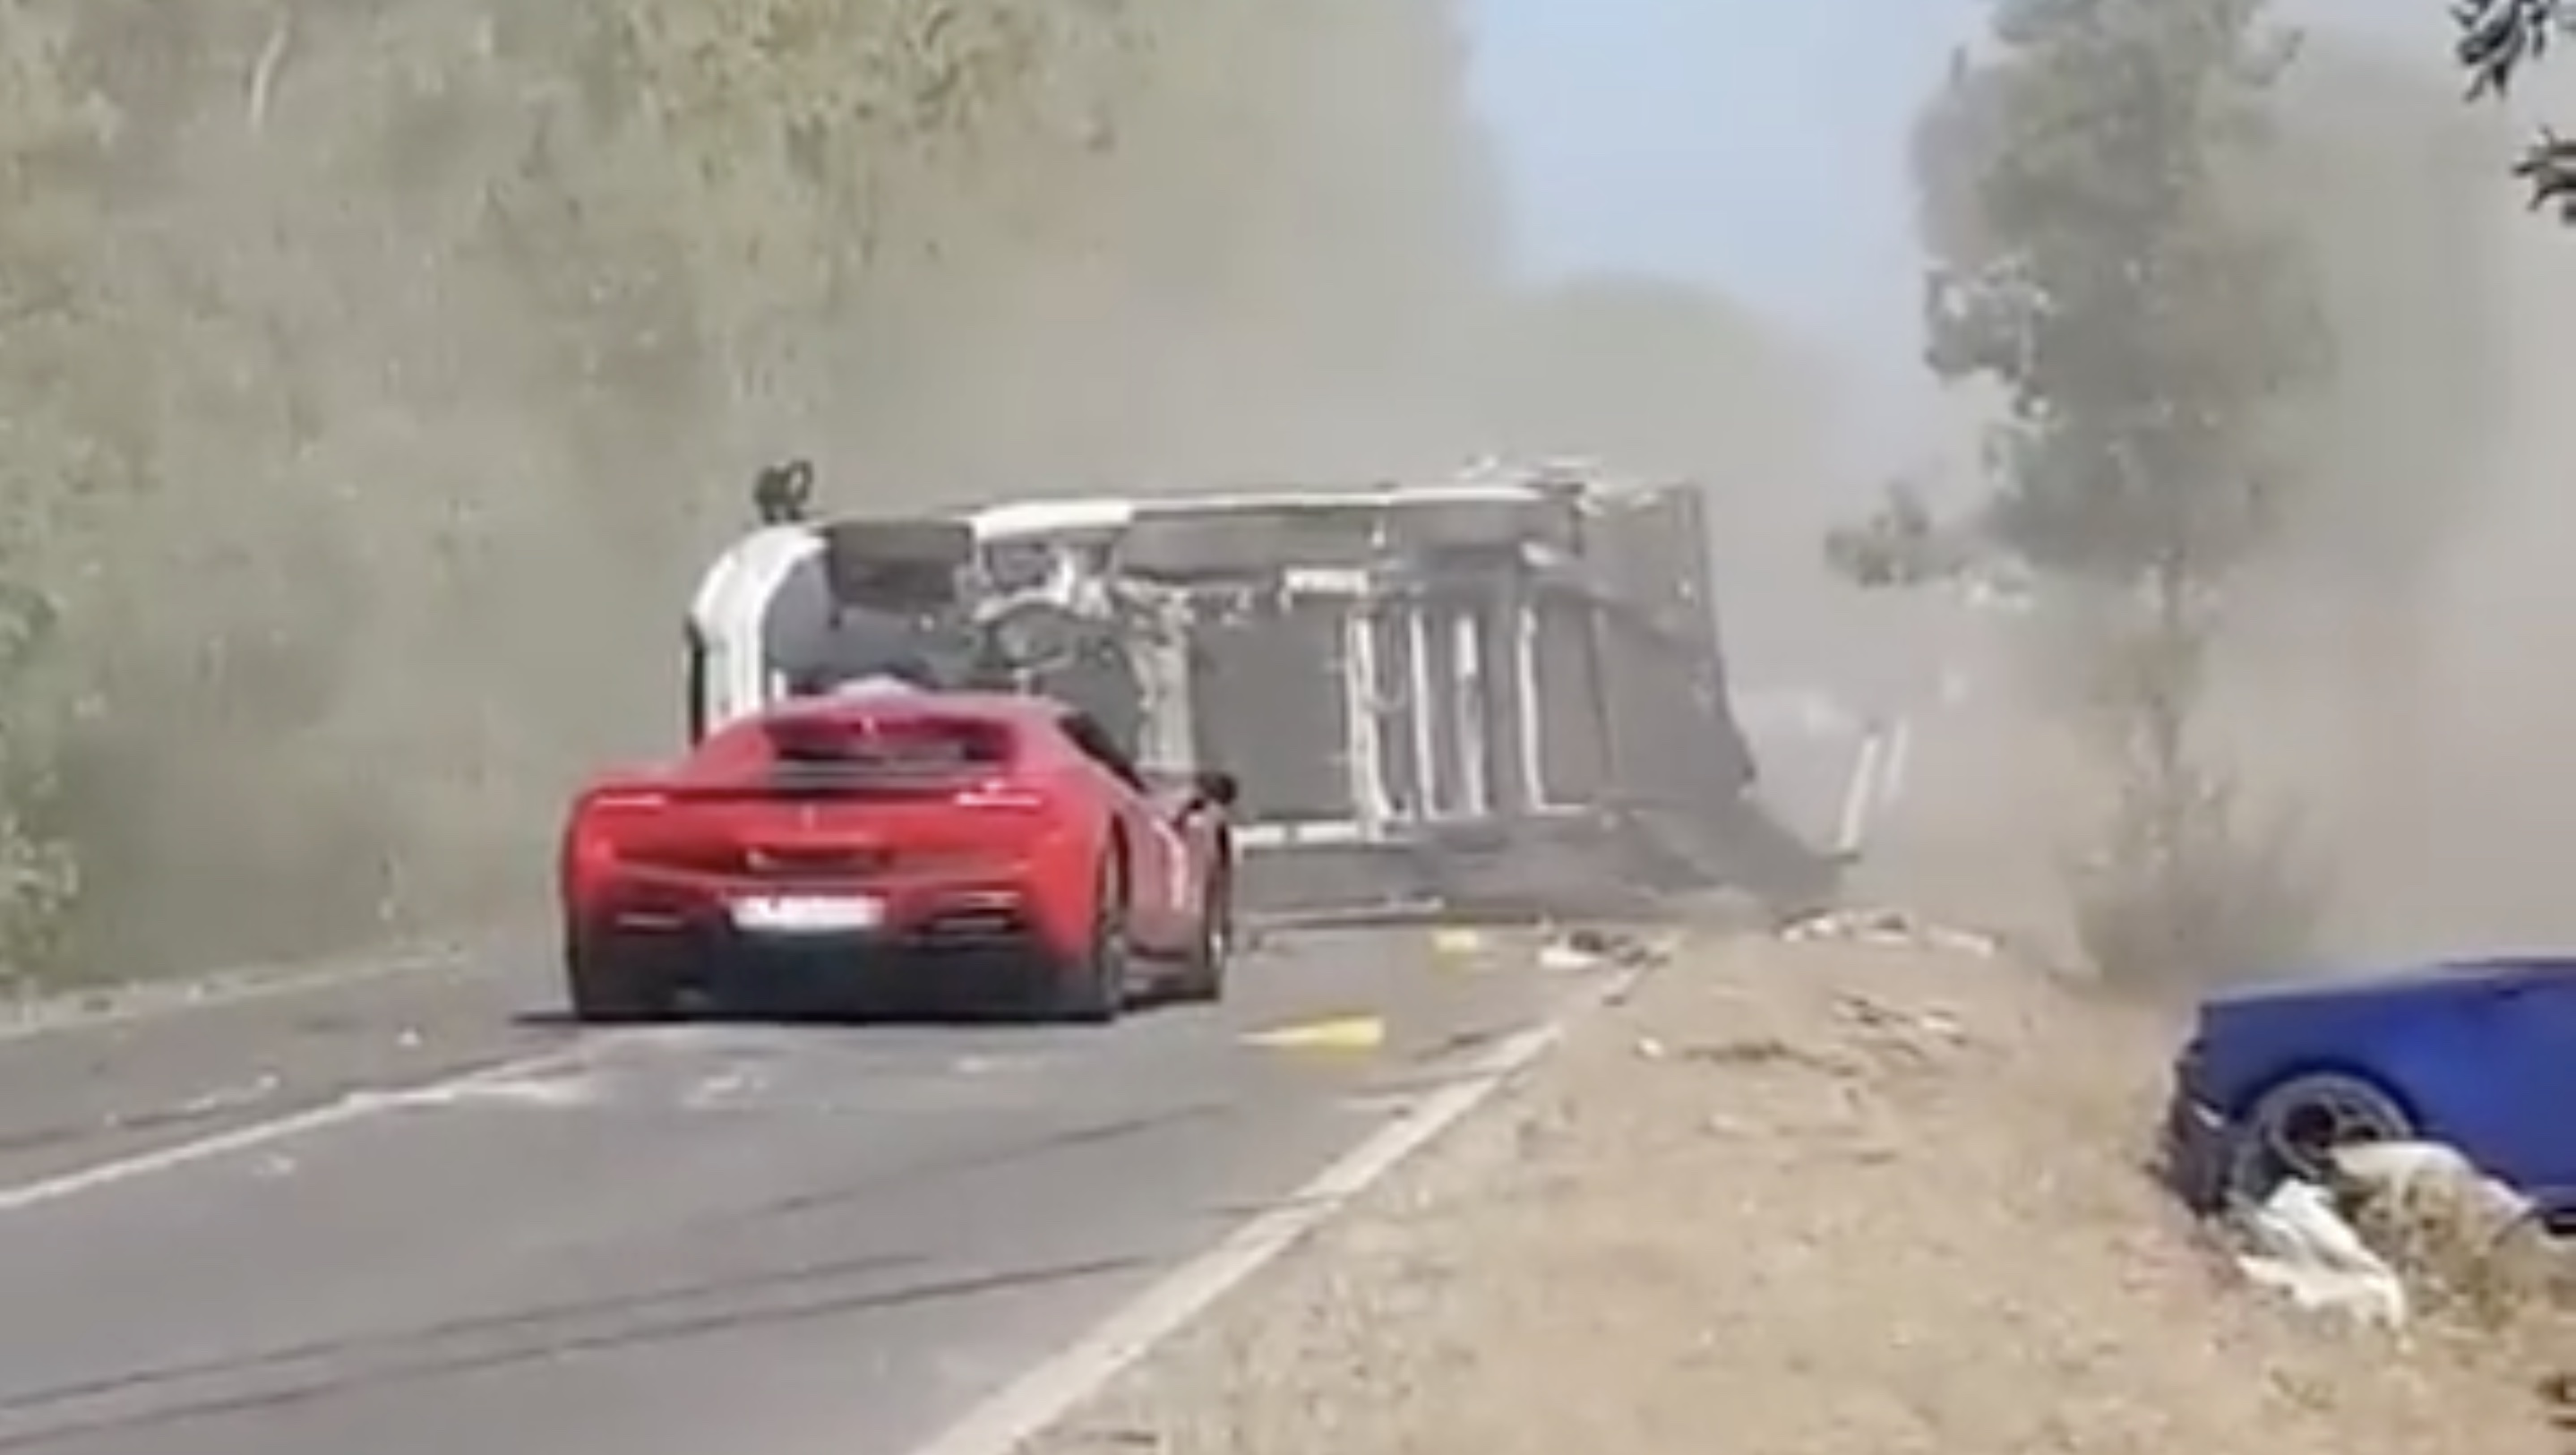 Der Ferrari geriet nach dem brutalen Zusammenstoß hinter dem umgestürzten Wohnmobil in Brand